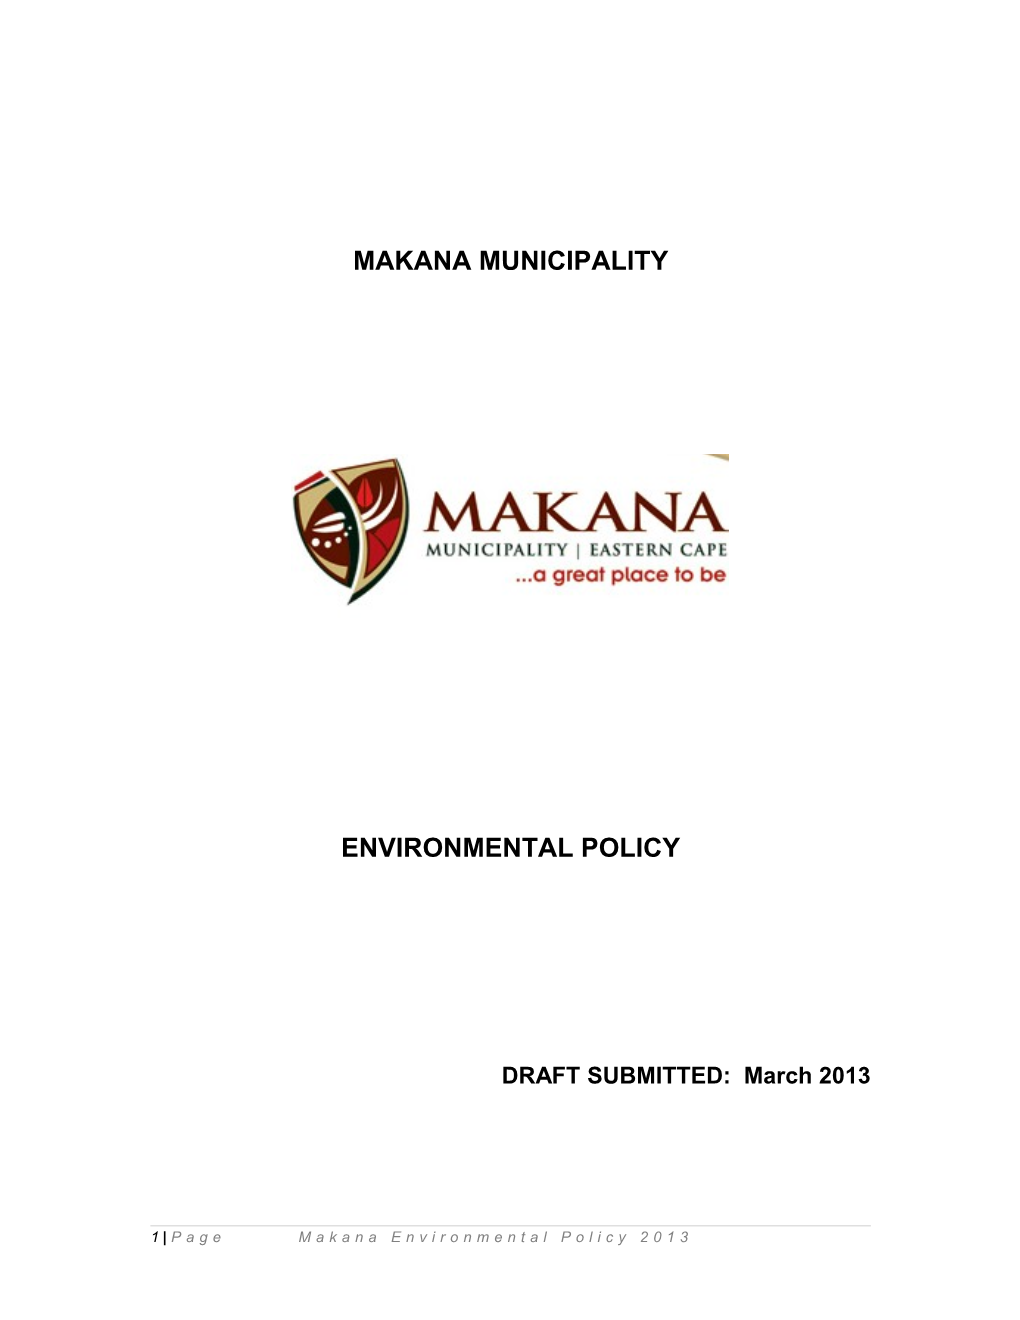 Makana Municipality